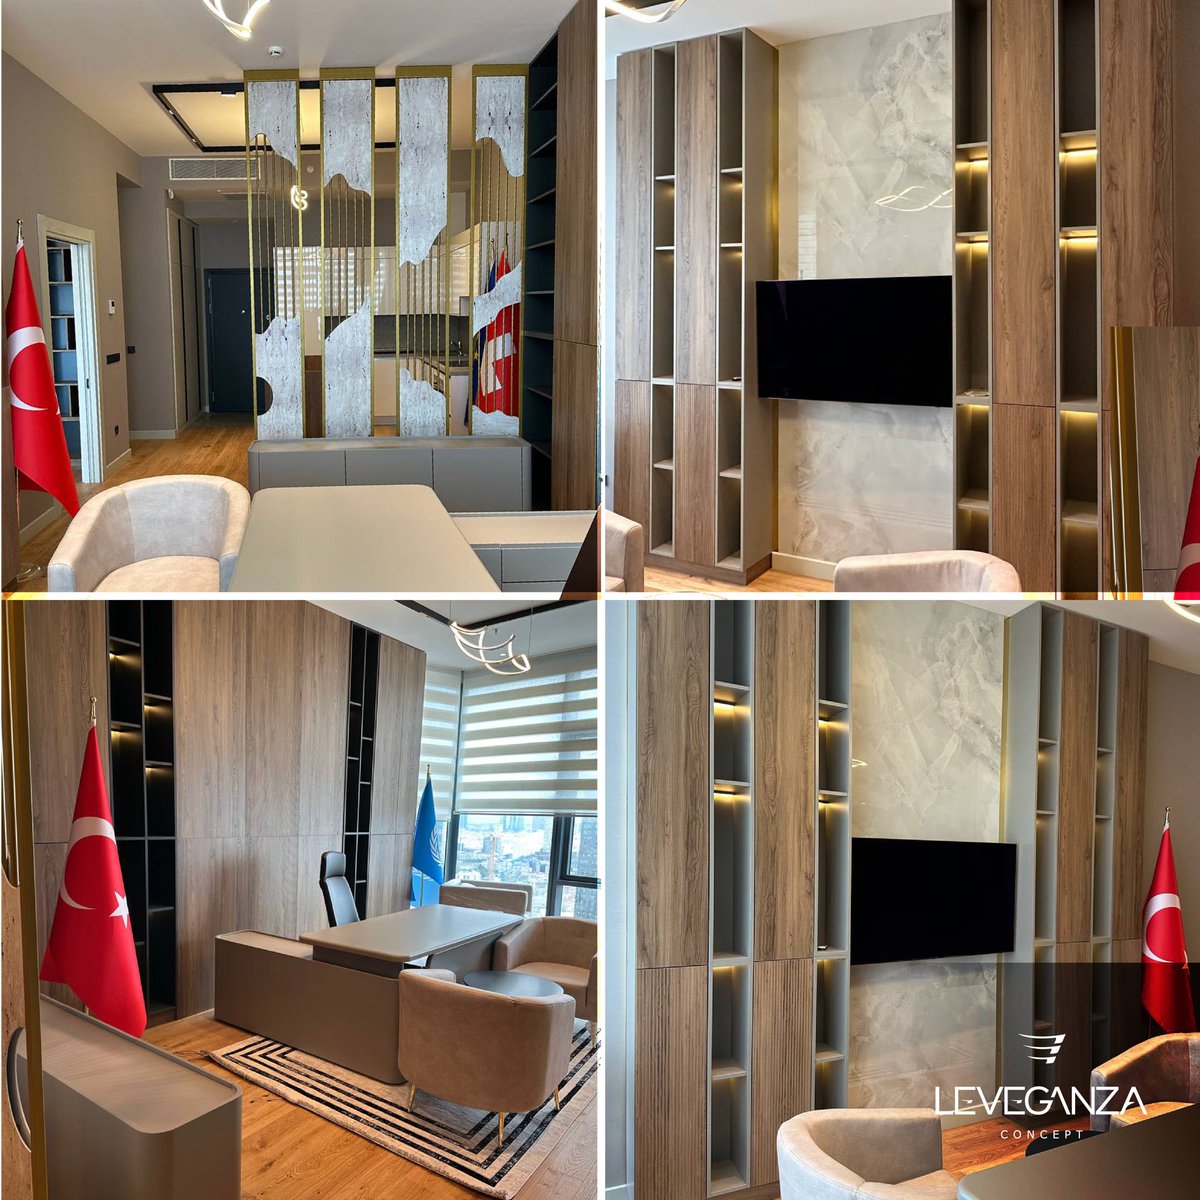 من تصميم وتنفيذ شركة ليڤجانزا للديكور والهندسة الداخلية⚜️ 📍Istanbul, Sinpaş Office Project Project Year : 2023 • 𝐋𝐄𝐕𝐄𝐆𝐀𝐍𝐙𝐀.. you Dream and we Design ⚜️ • #Leveganza #concept #interiordesign #decor #design #interior #villa #luxury #istanbul